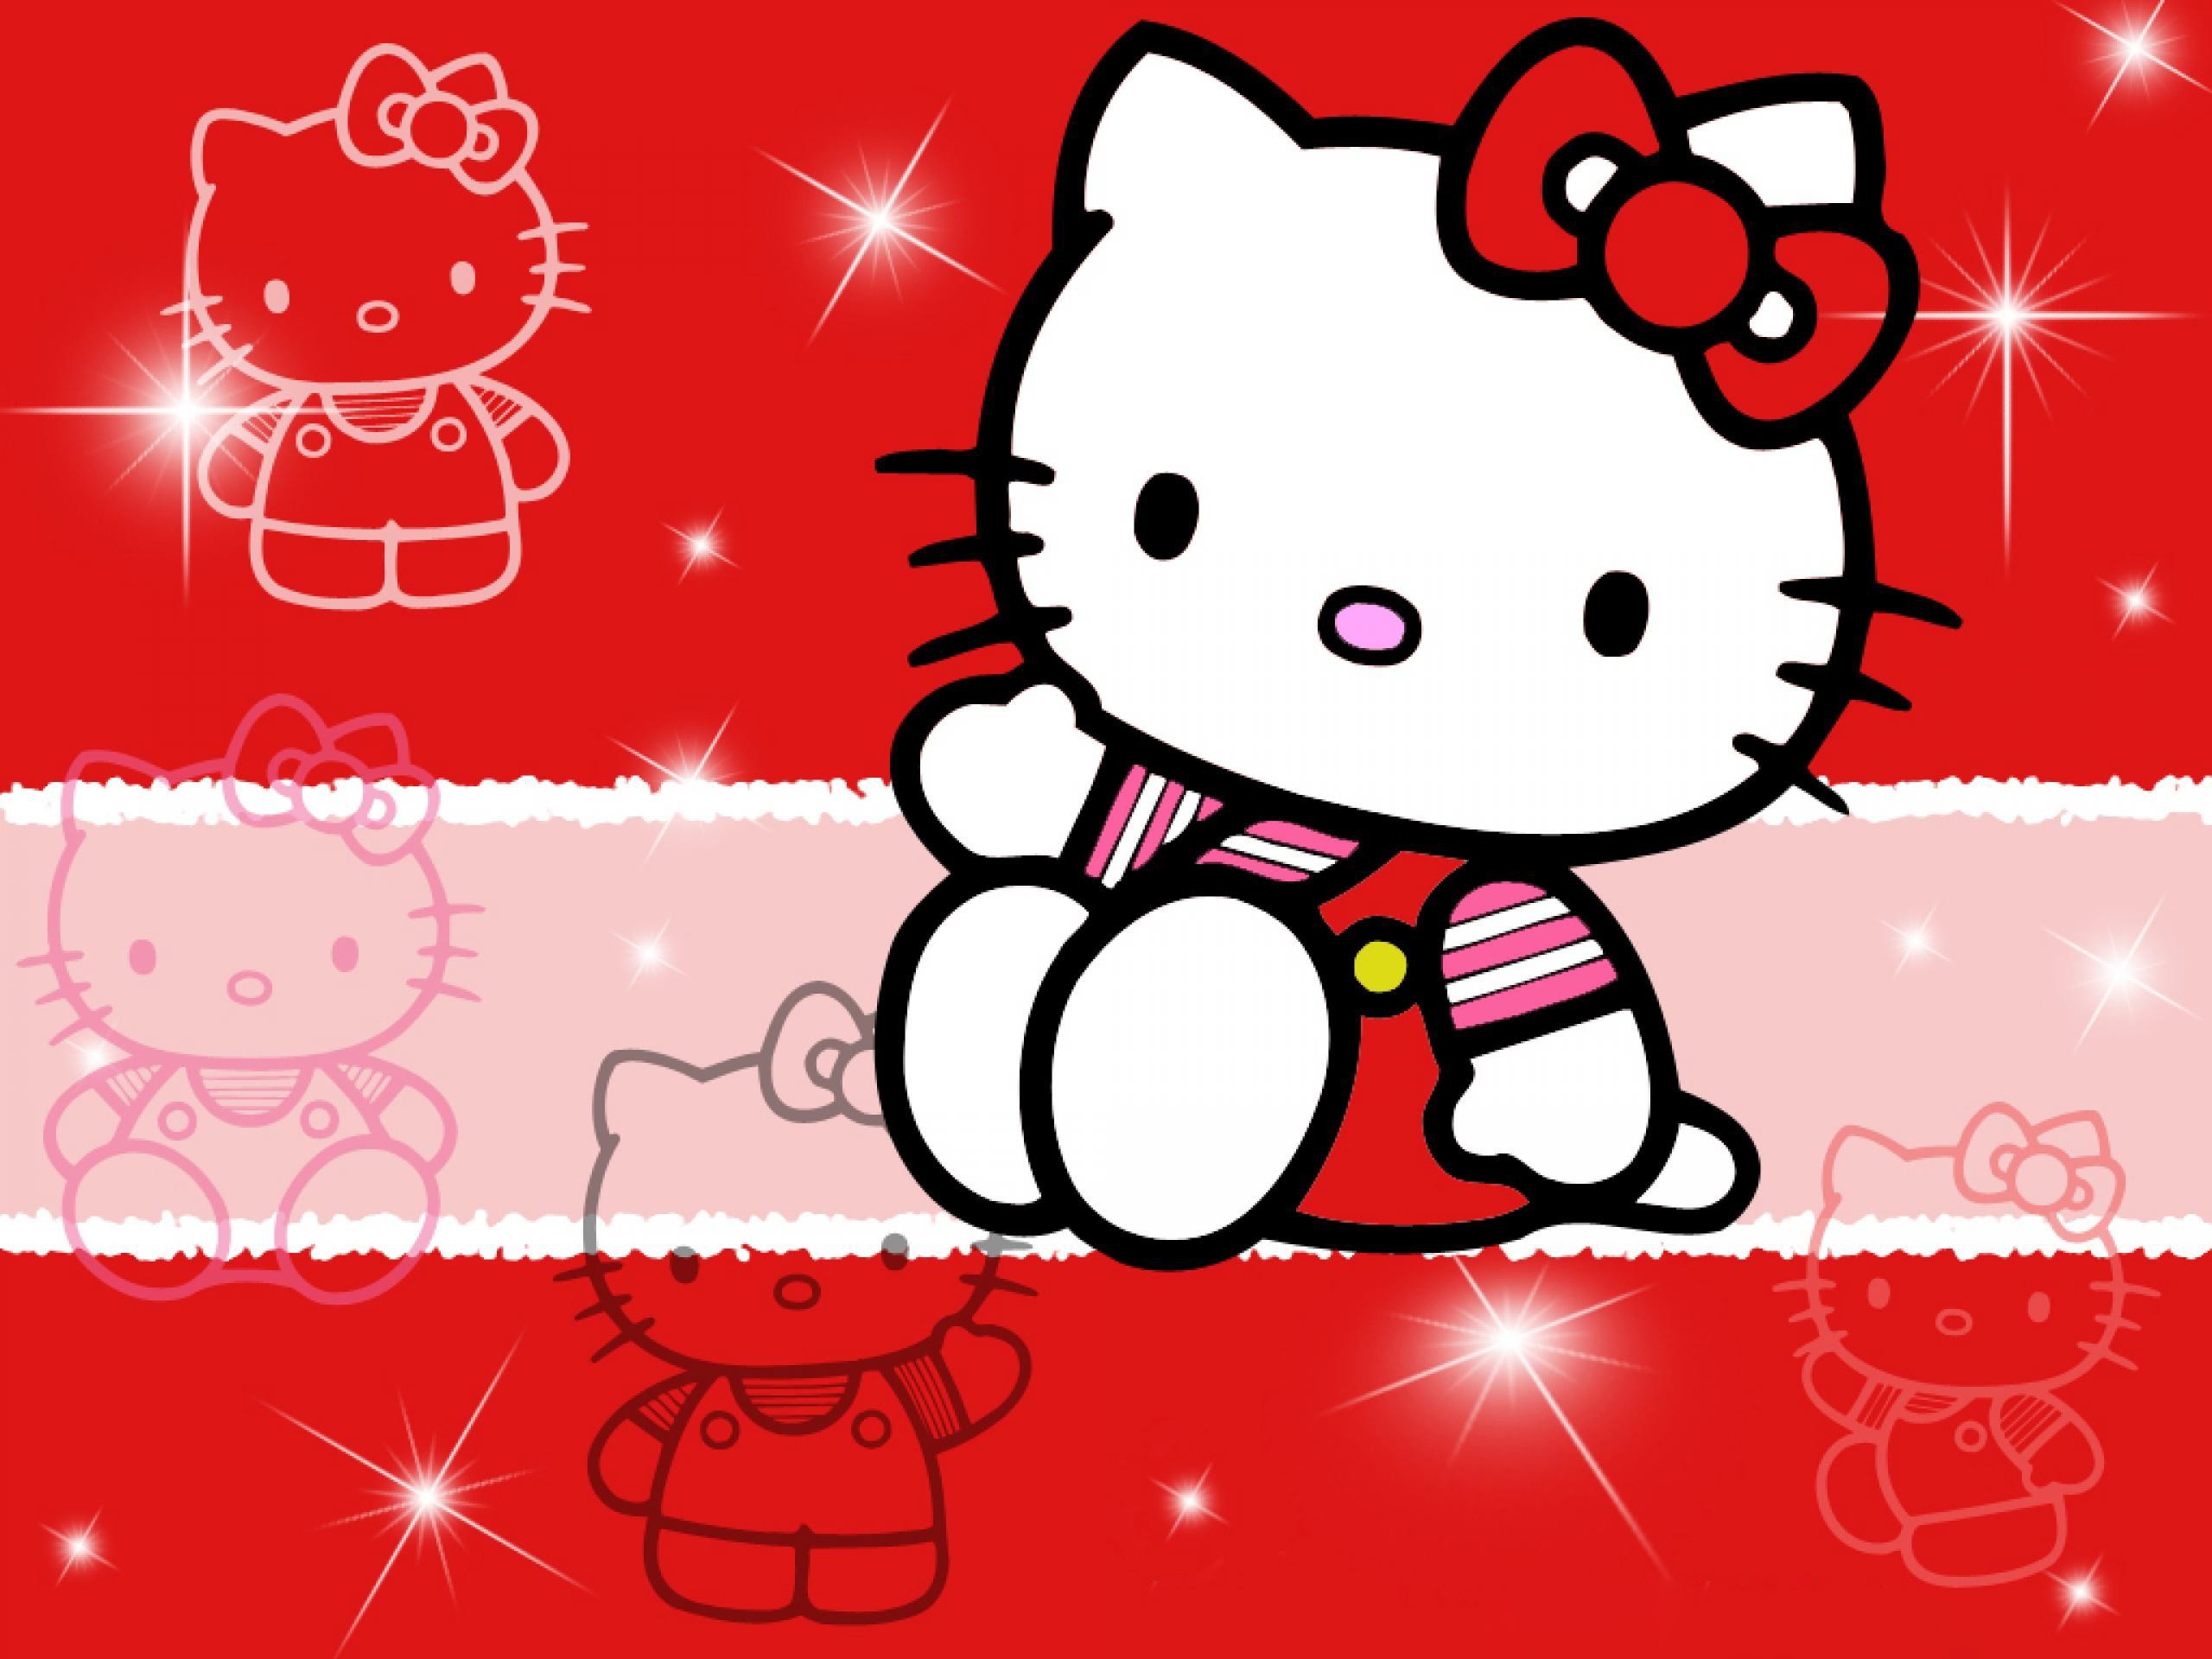 Hãy cùng thưởng thức không khí Giáng Sinh với những hình nền đáng yêu của Hello Kitty! Với đủ loại hình nền khác nhau, từ những chú mèo xinh đến những bông tuyết tinh khiết, bạn không thể bỏ lỡ bộ sưu tập này. Translation: Let\'s enjoy the Christmas atmosphere with adorable Hello Kitty wallpapers! With various designs, from cute kitties to pure snowflakes, you can\'t miss this collection.